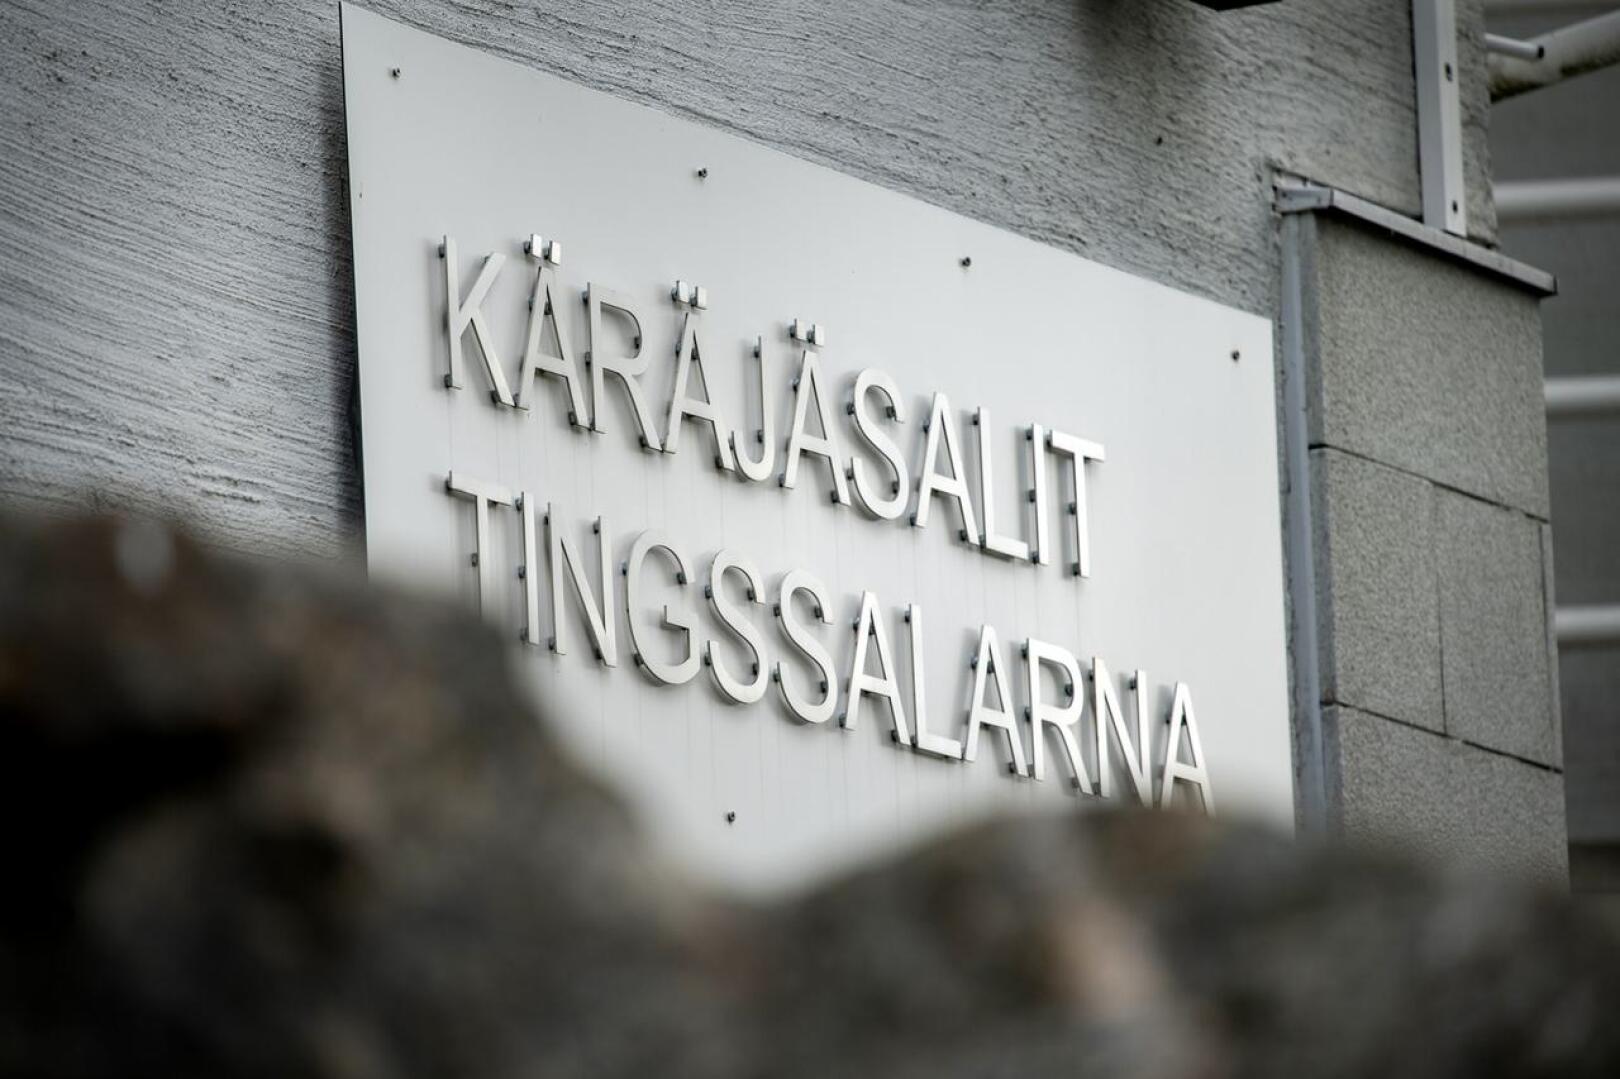 Kannuslaista yritystä vastaan nostettu kanne hylättiin Pohjanmaan käräjäoikeudessa.